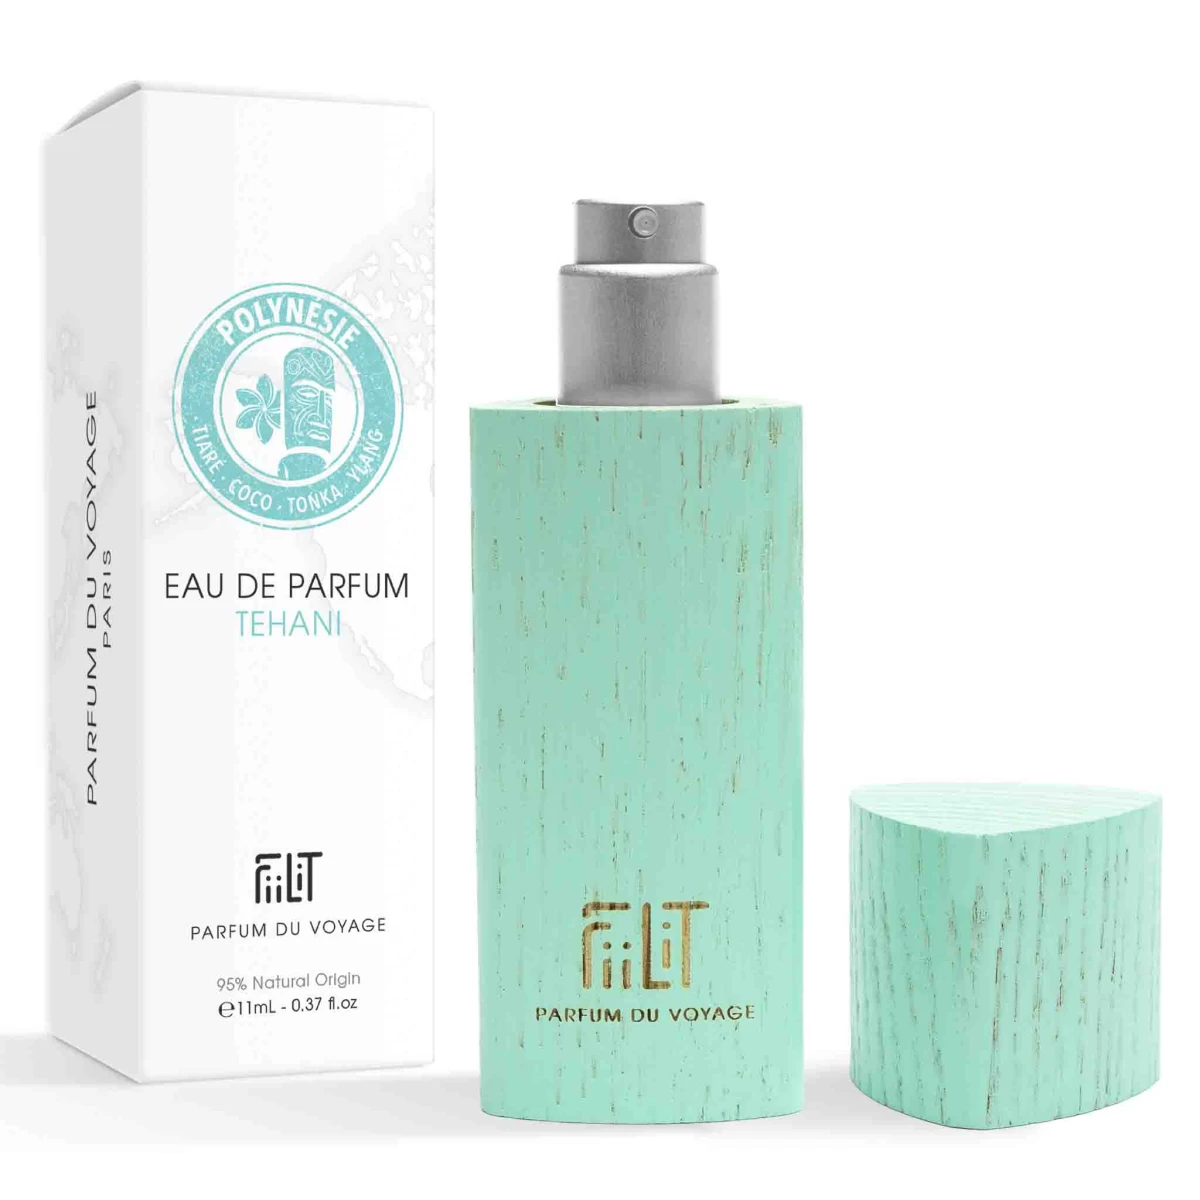 detailed_9_eau-de-parfum-11ml-bois-tehani-polynesie-fiilit-parfum-du-voyage-naturel.webp